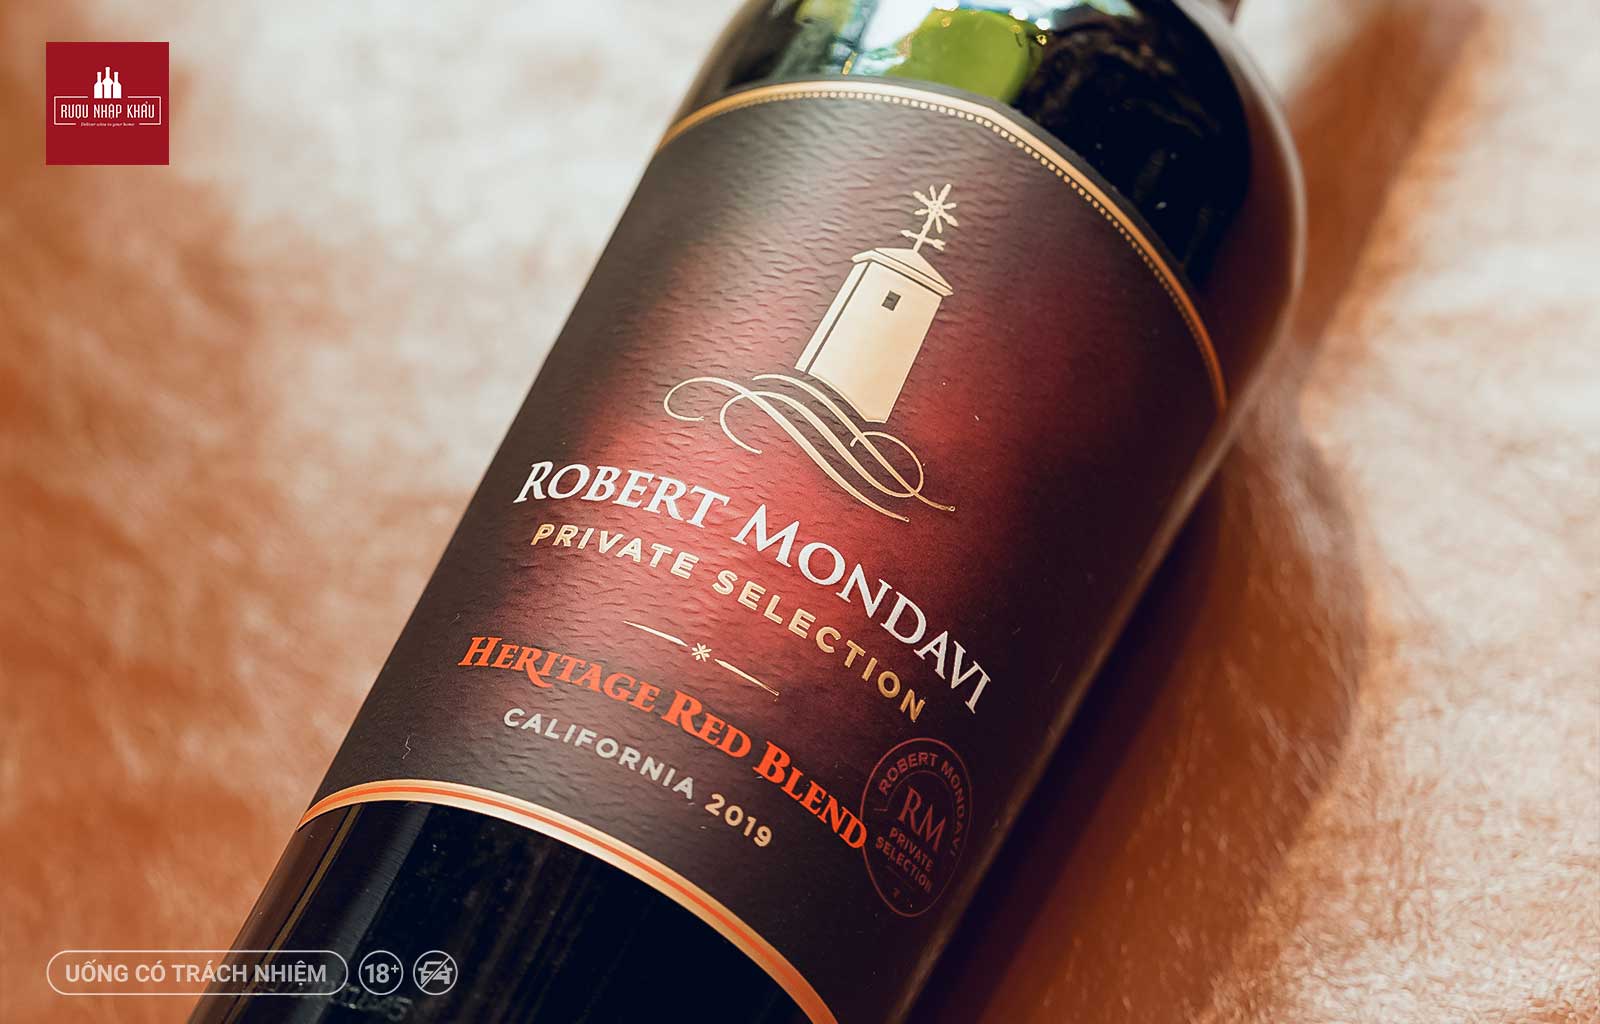 Hương vị rượu vang đỏ Robert Mondavi Private Selection Heritage Red Blend